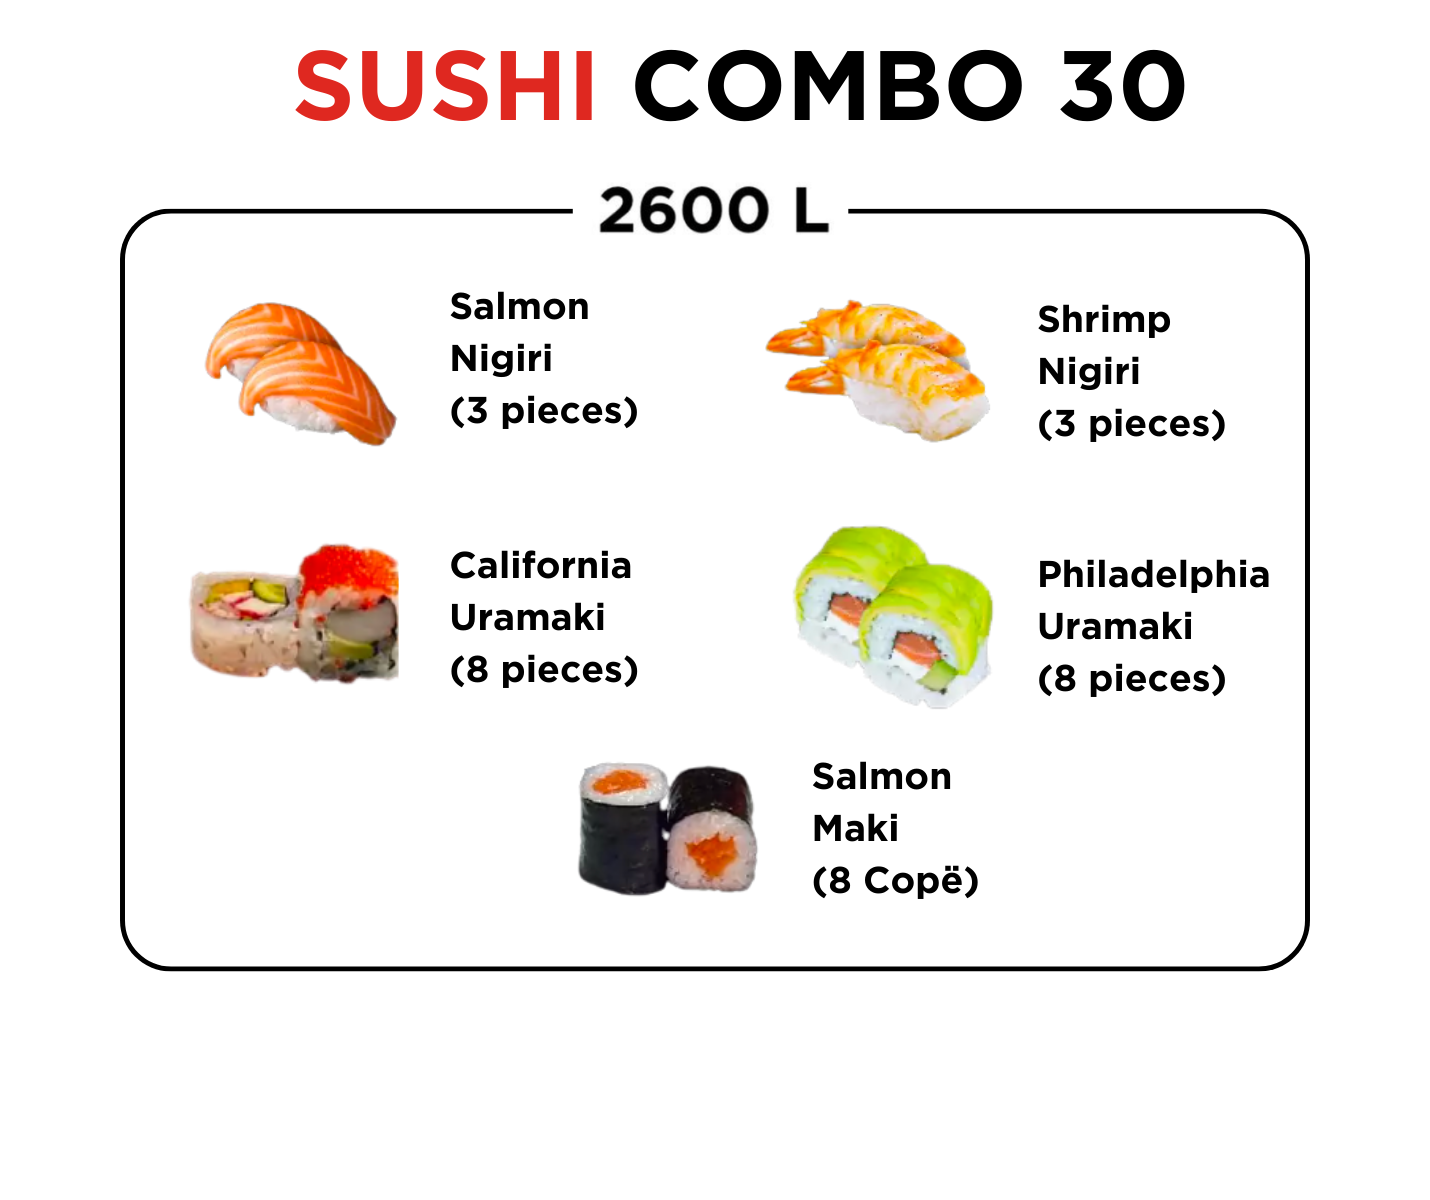 Sushi Combo 30